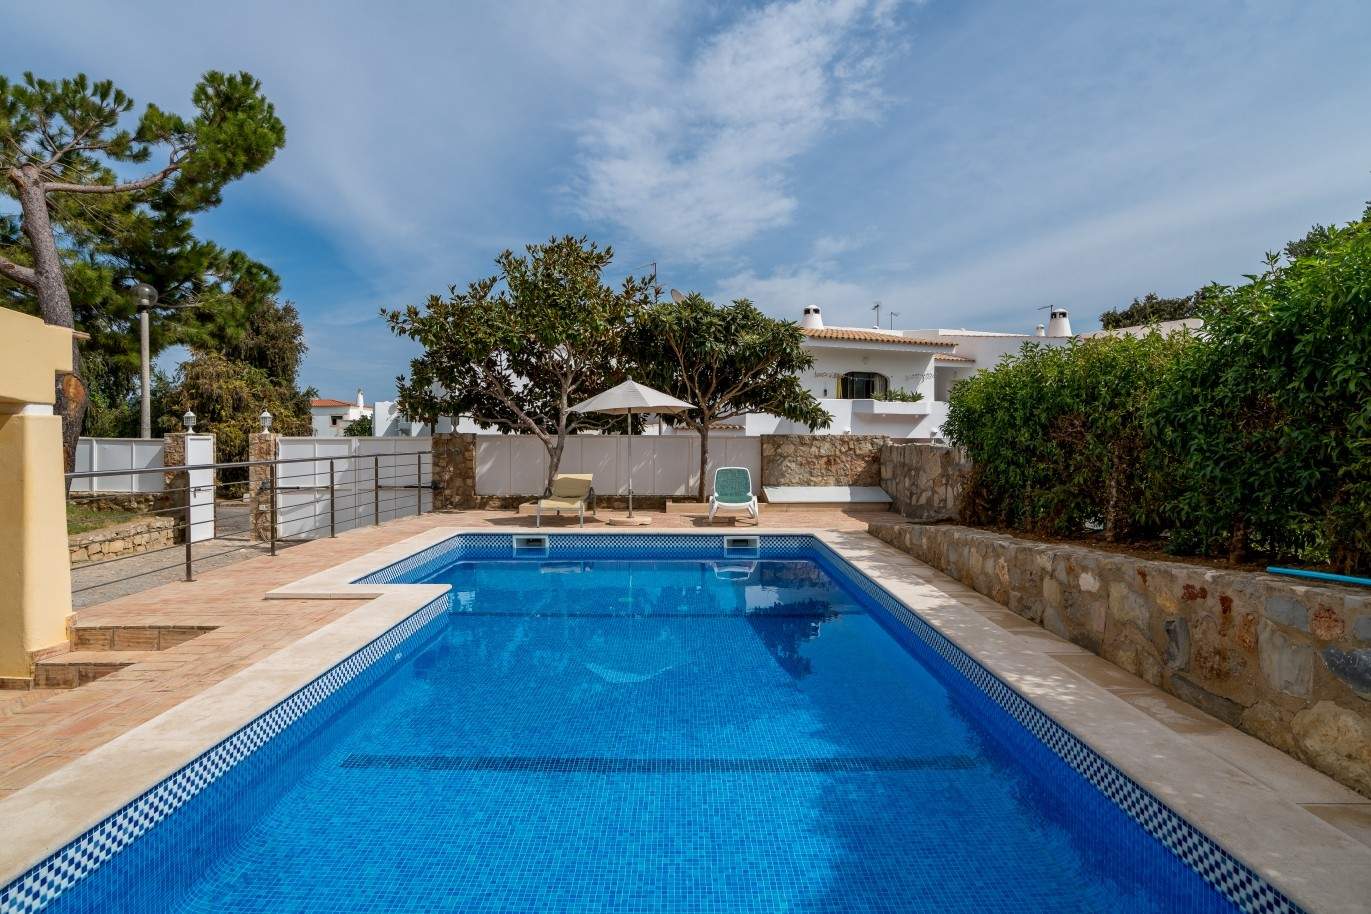 Moradia para venda, com piscina, perto da praia, Albufeira, Algarve_68459